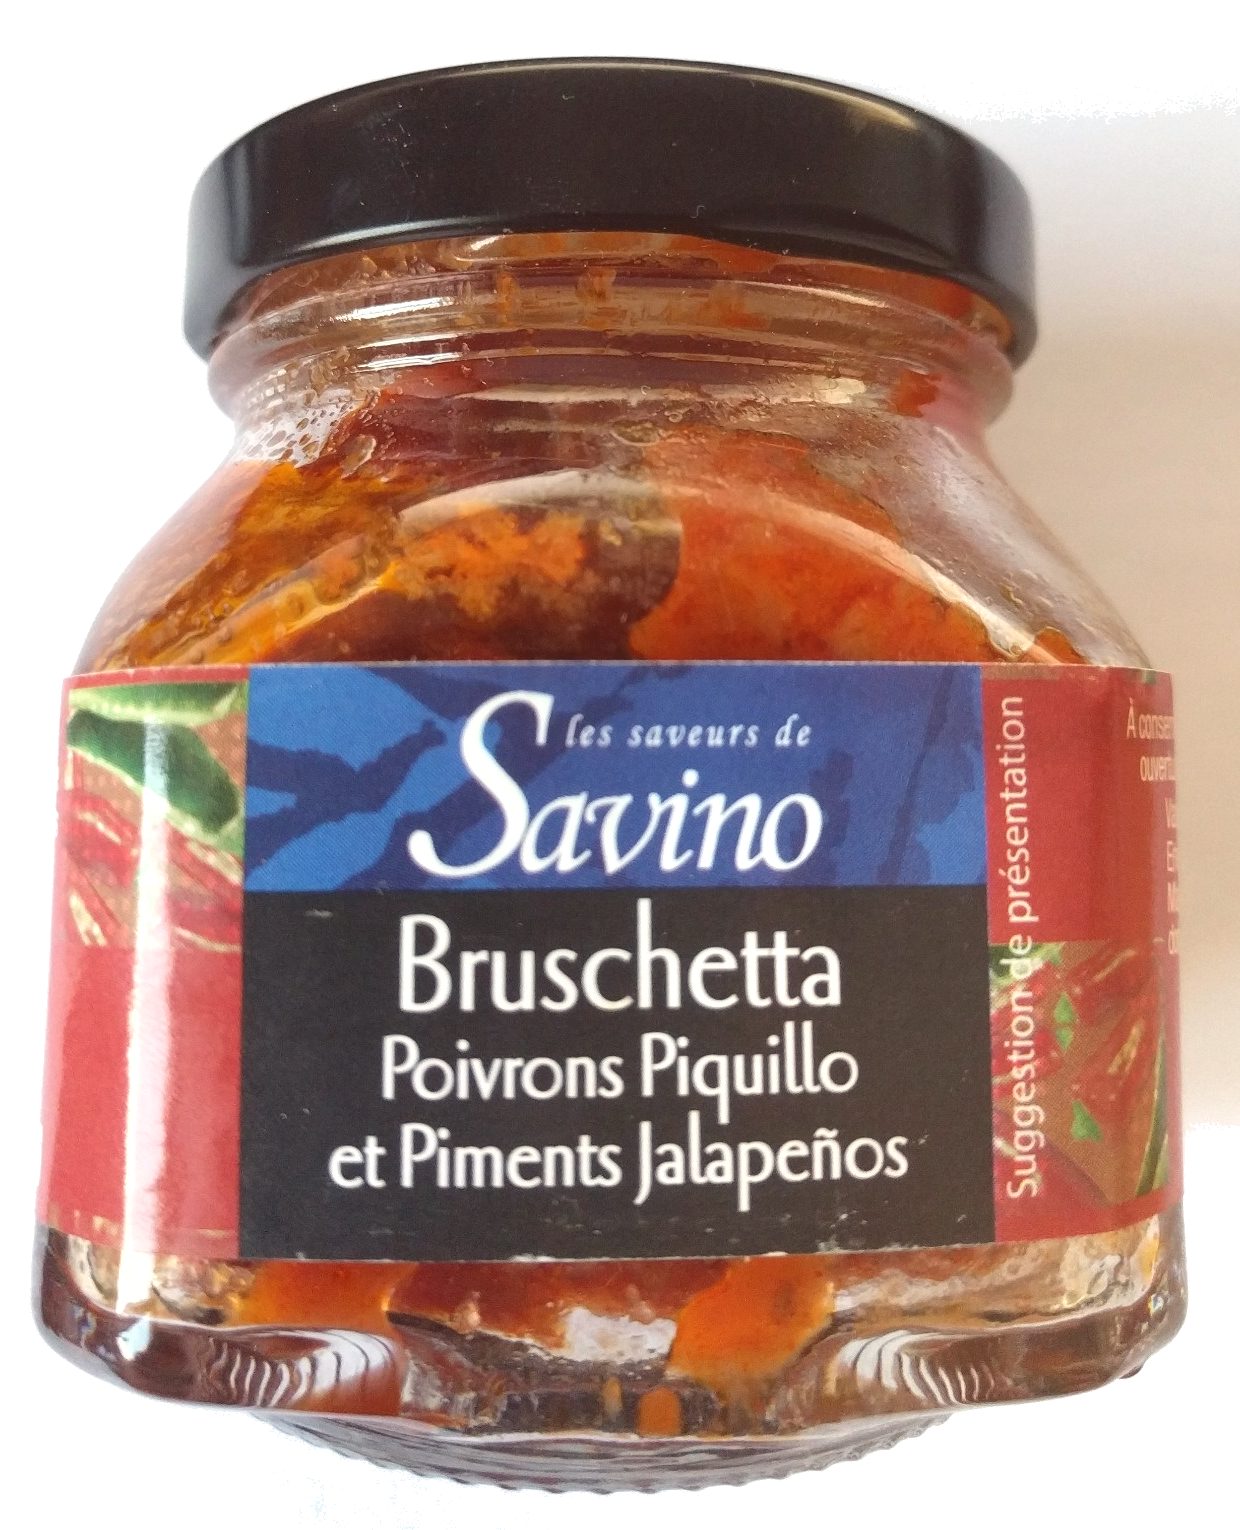 Bruschetta poivrons et piments - Product - fr